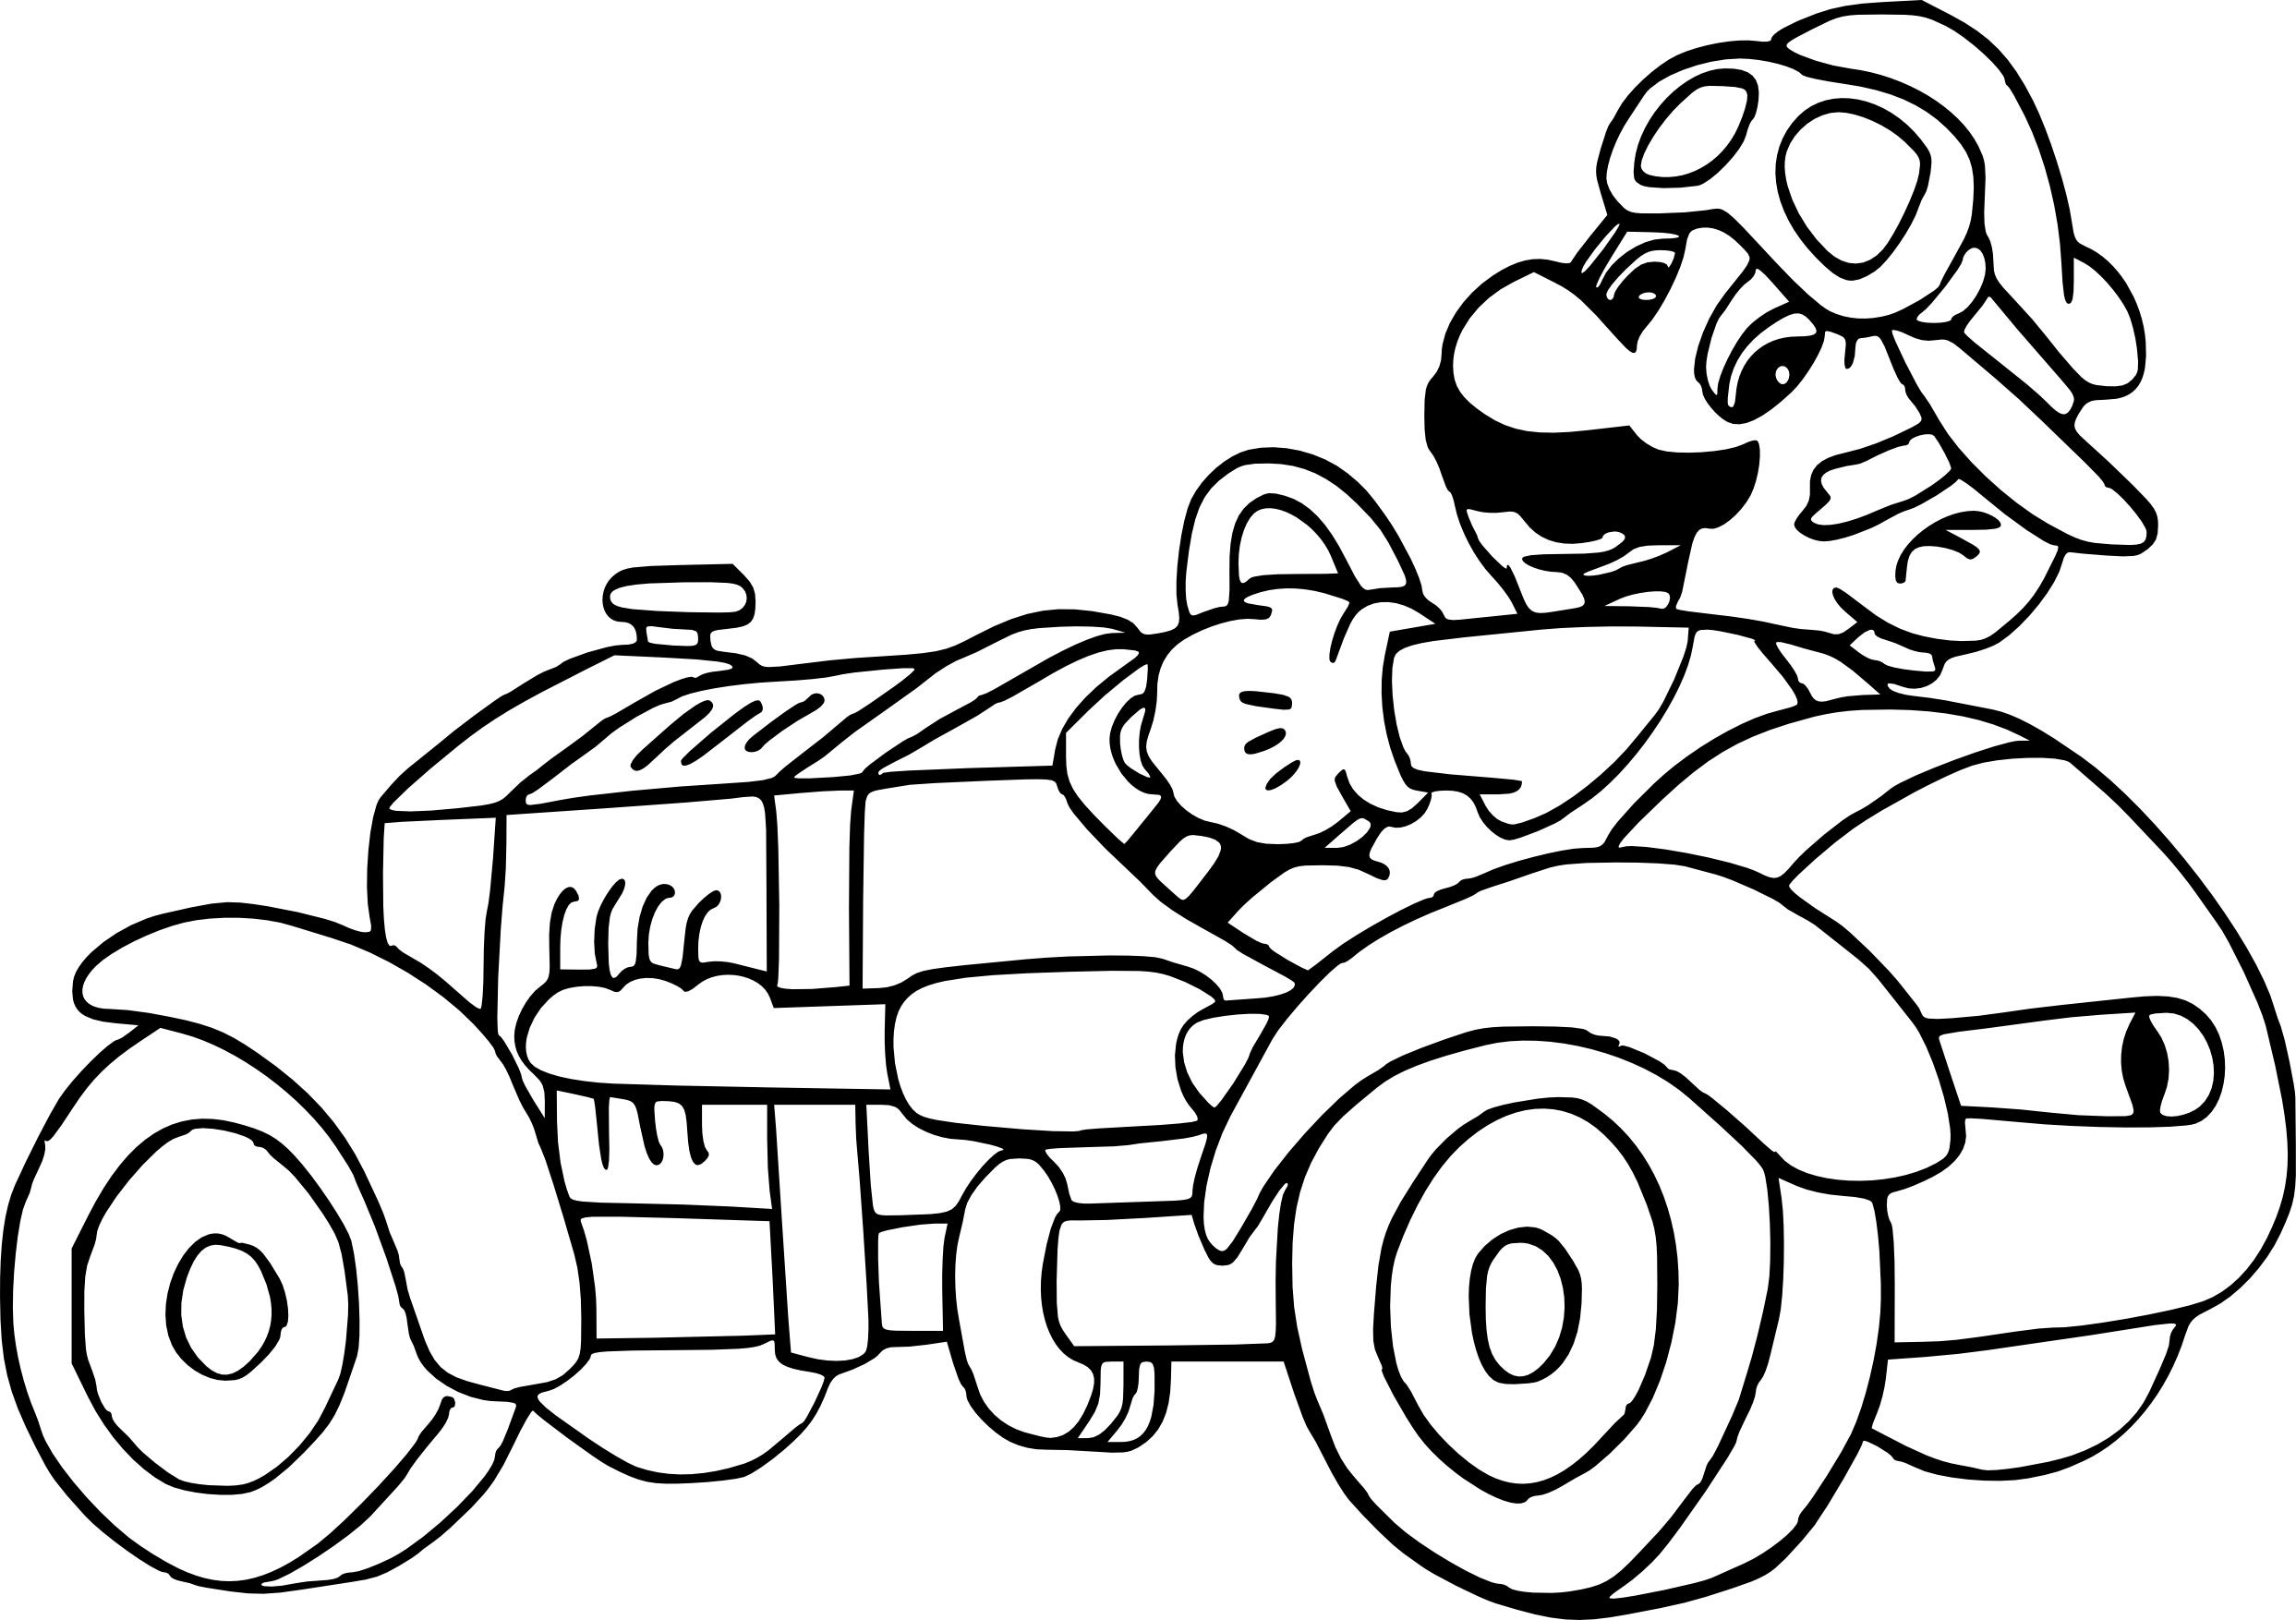 Coloriage Super Mario Élégant Photos Coloriage Mario Kart 7 à Imprimer